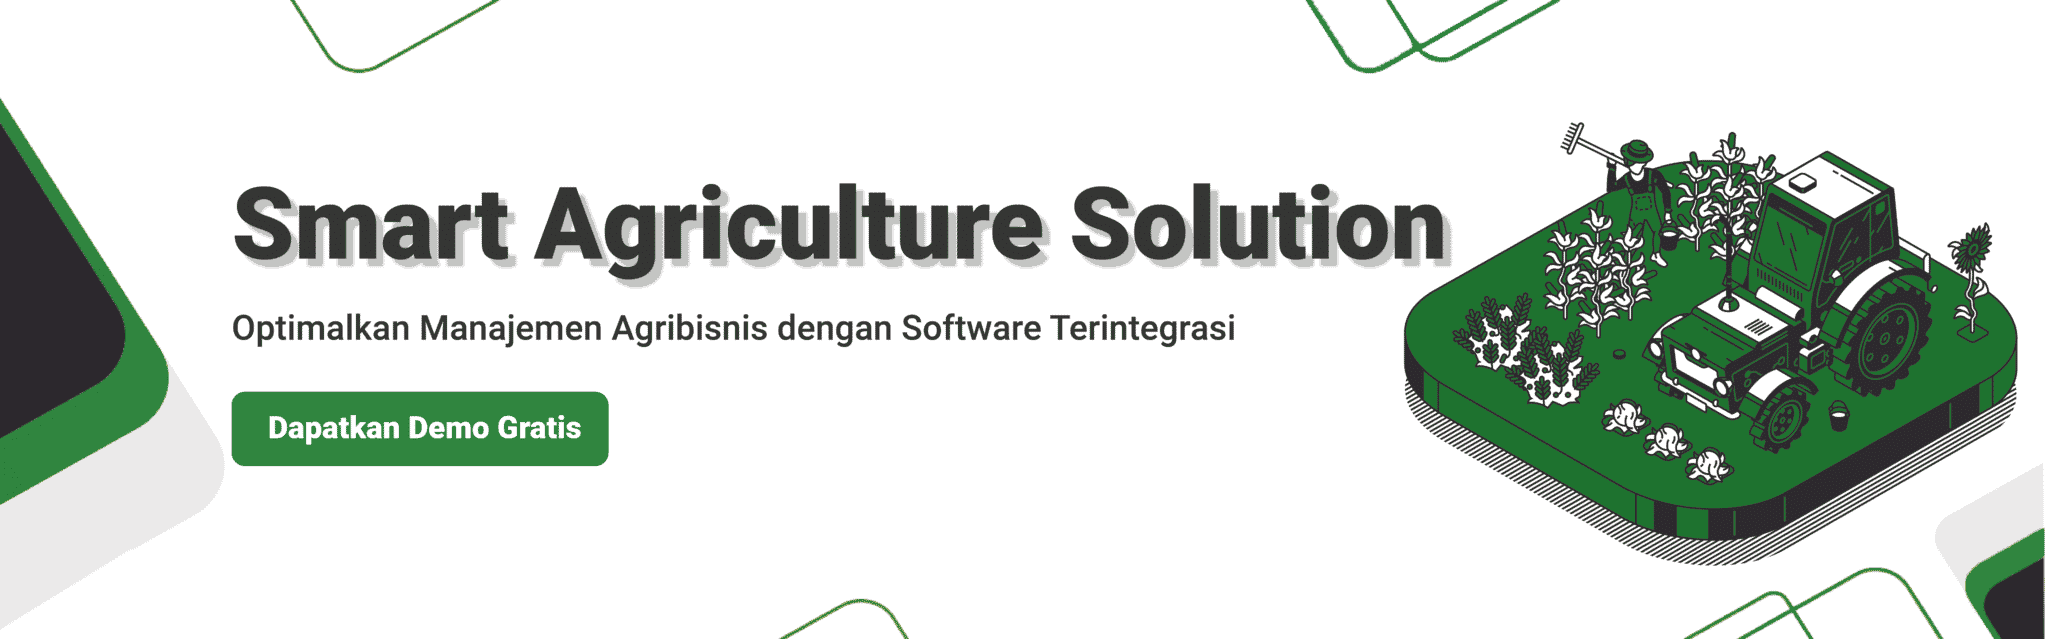 industri pertanian di indonesia